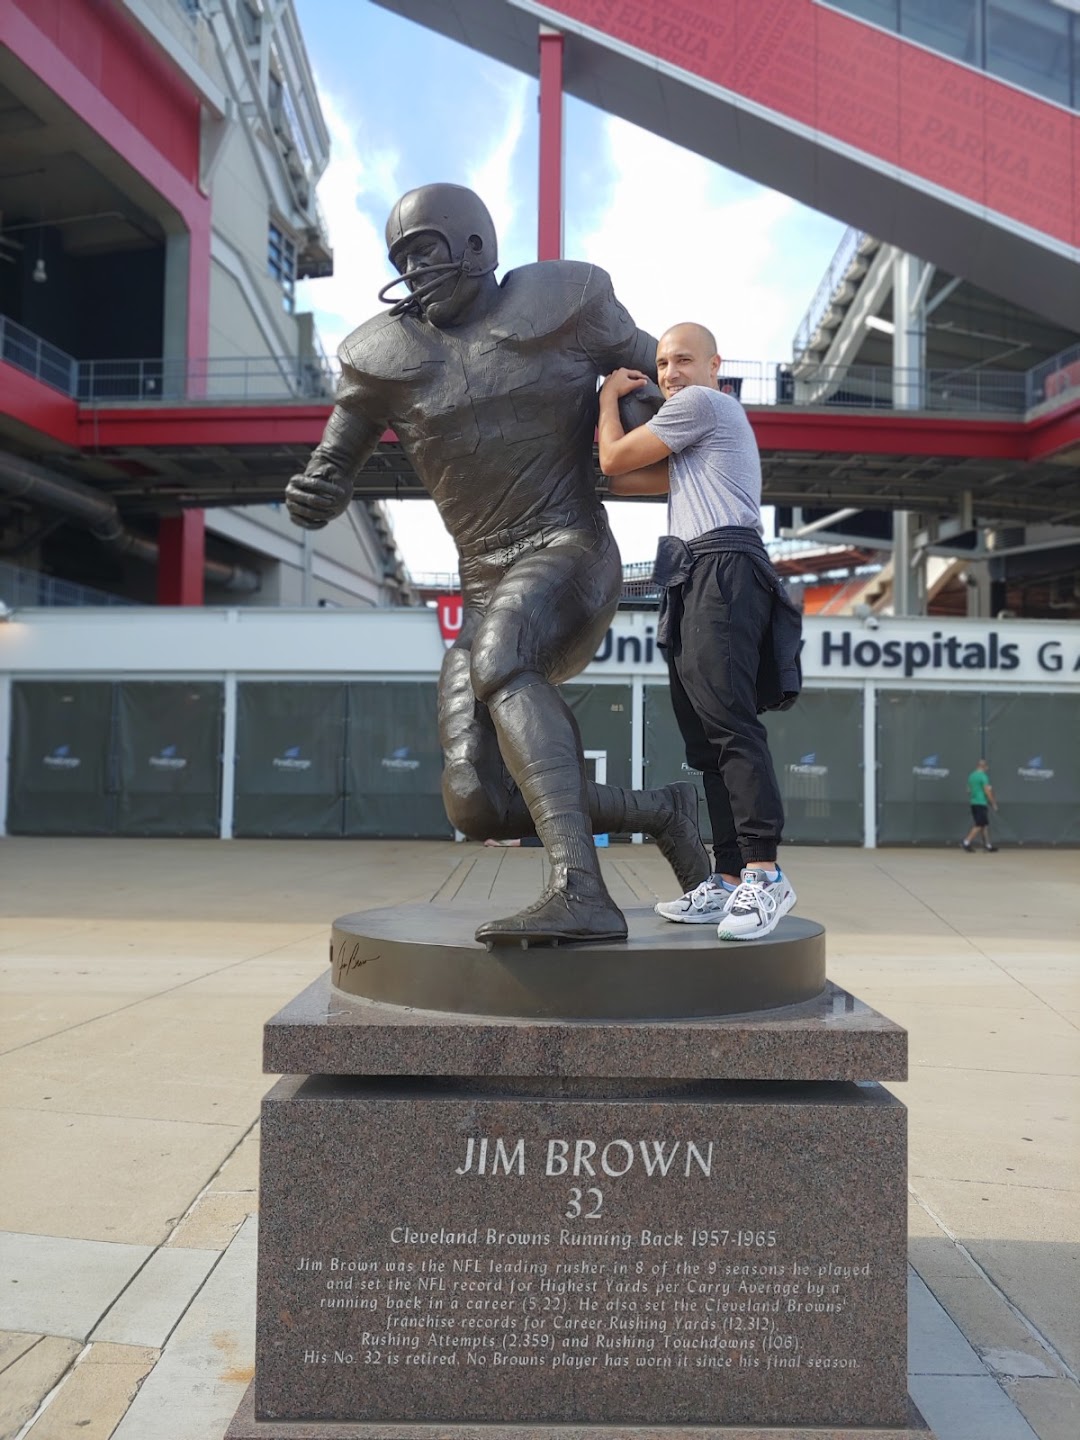 Jim Brown statue